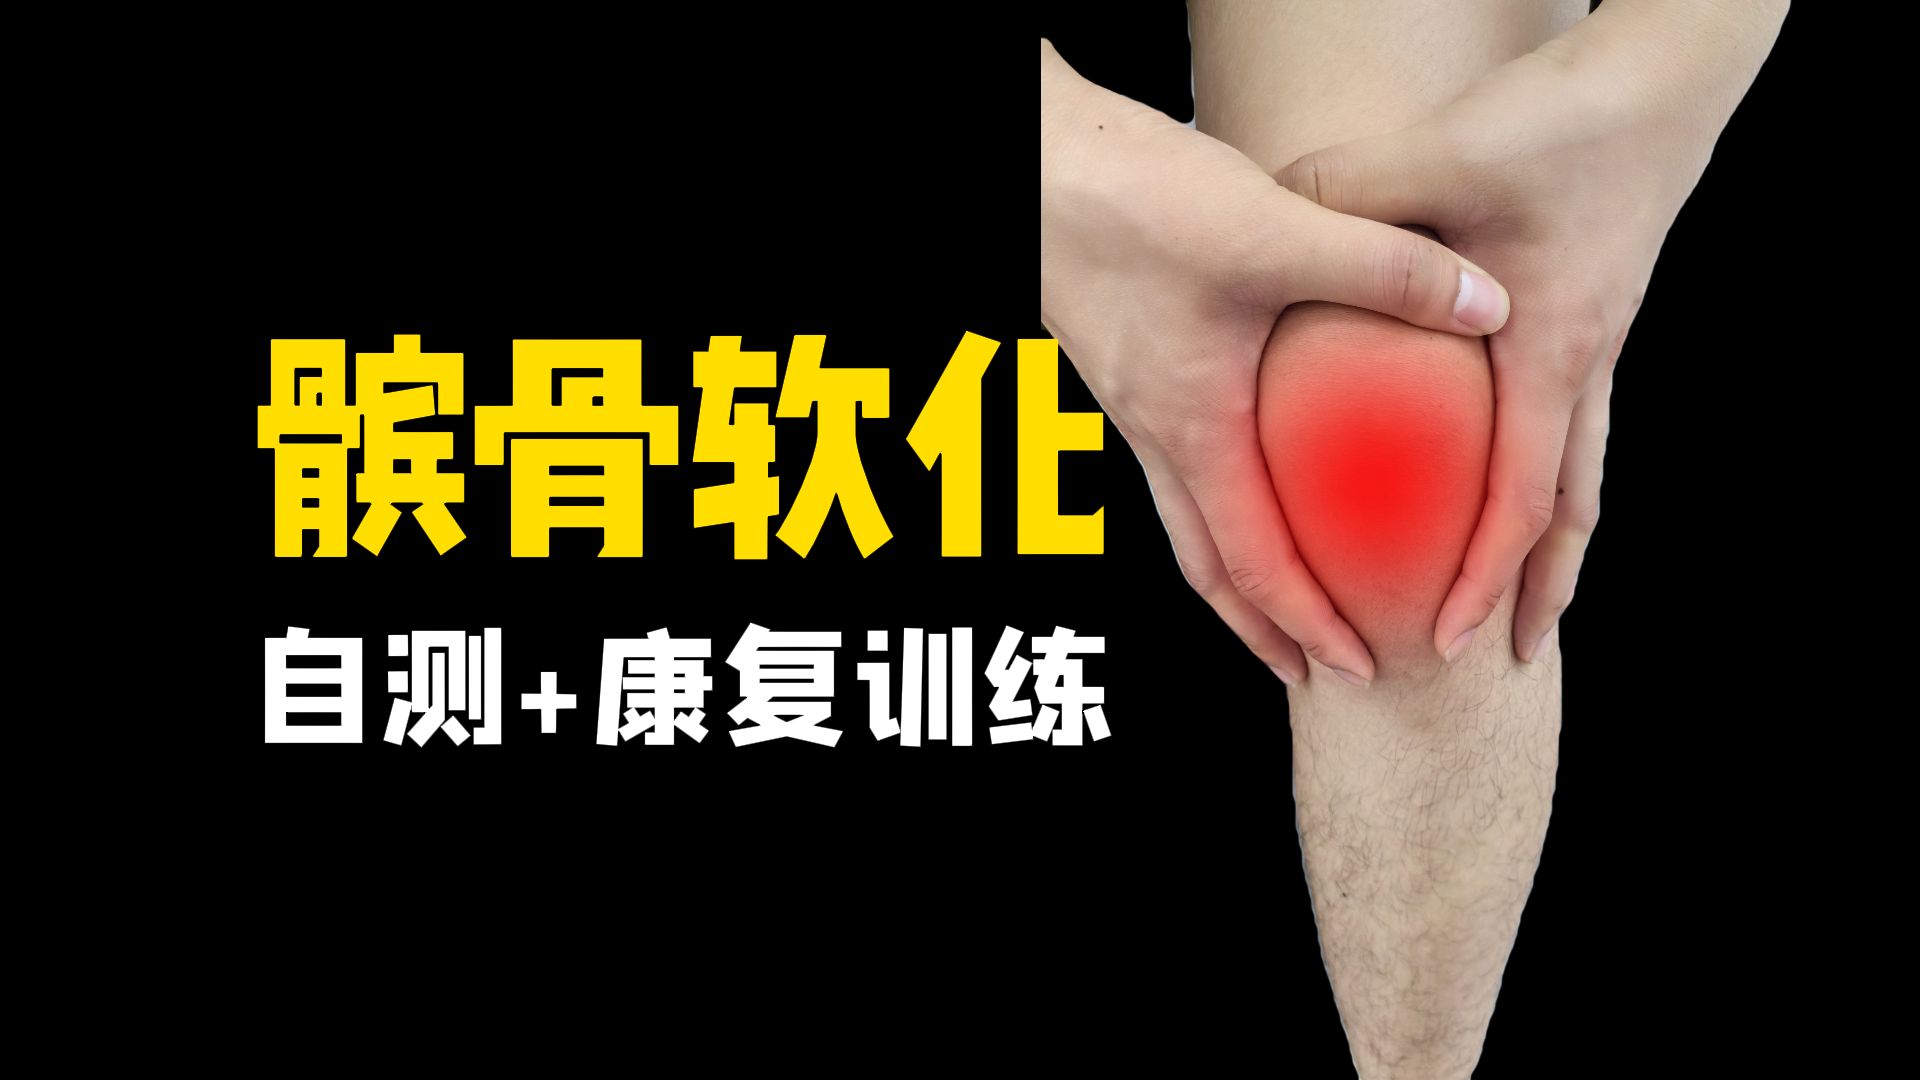 【髌骨软化】膝盖疼痛评估与自我康复训练，专业康复师帮你改善髌骨软化问题